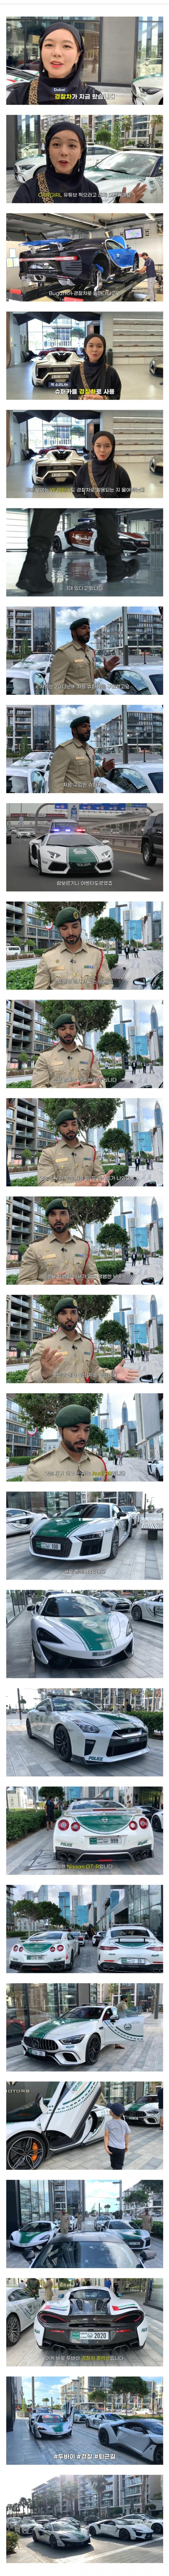 두바이 경찰을 불러서 차량 리뷰하는 유튜버